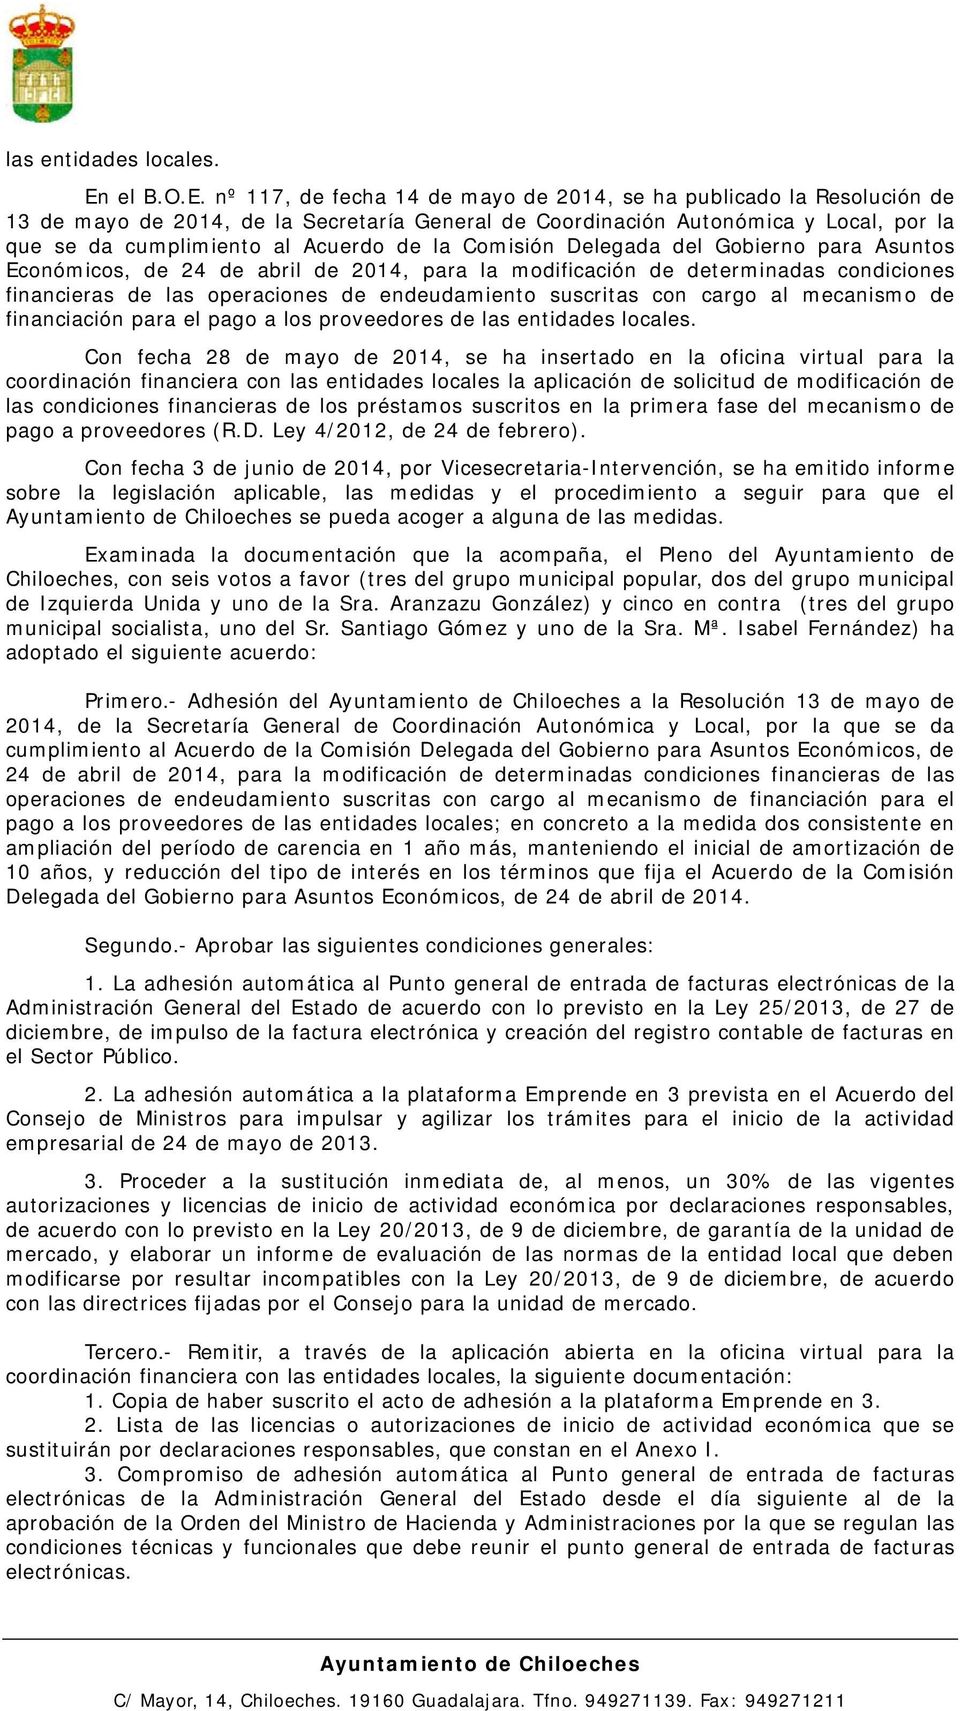 nº 117, de fecha 14 de mayo de 2014, se ha publicado la Resolución de 13 de mayo de 2014, de la Secretaría General de Coordinación Autonómica y Local, por la que se da cumplimiento al Acuerdo de la